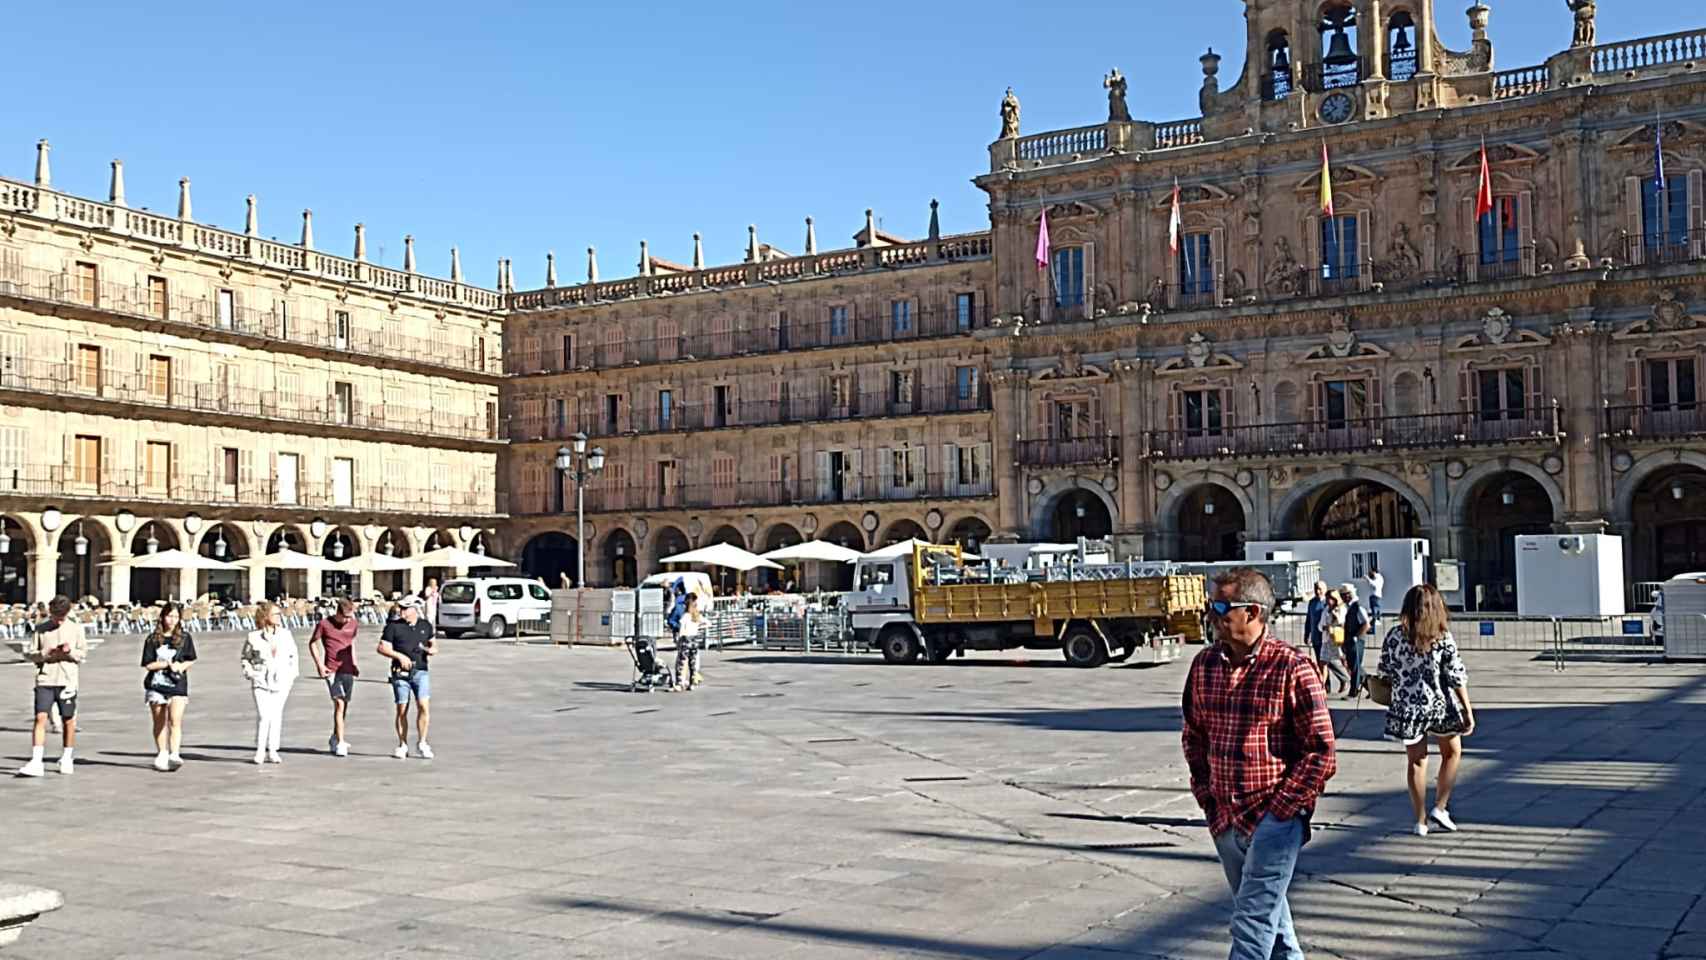 El Ayuntamiento inicia la instalación del escenario para los conciertos en la Plaza Mayor de Salamanca